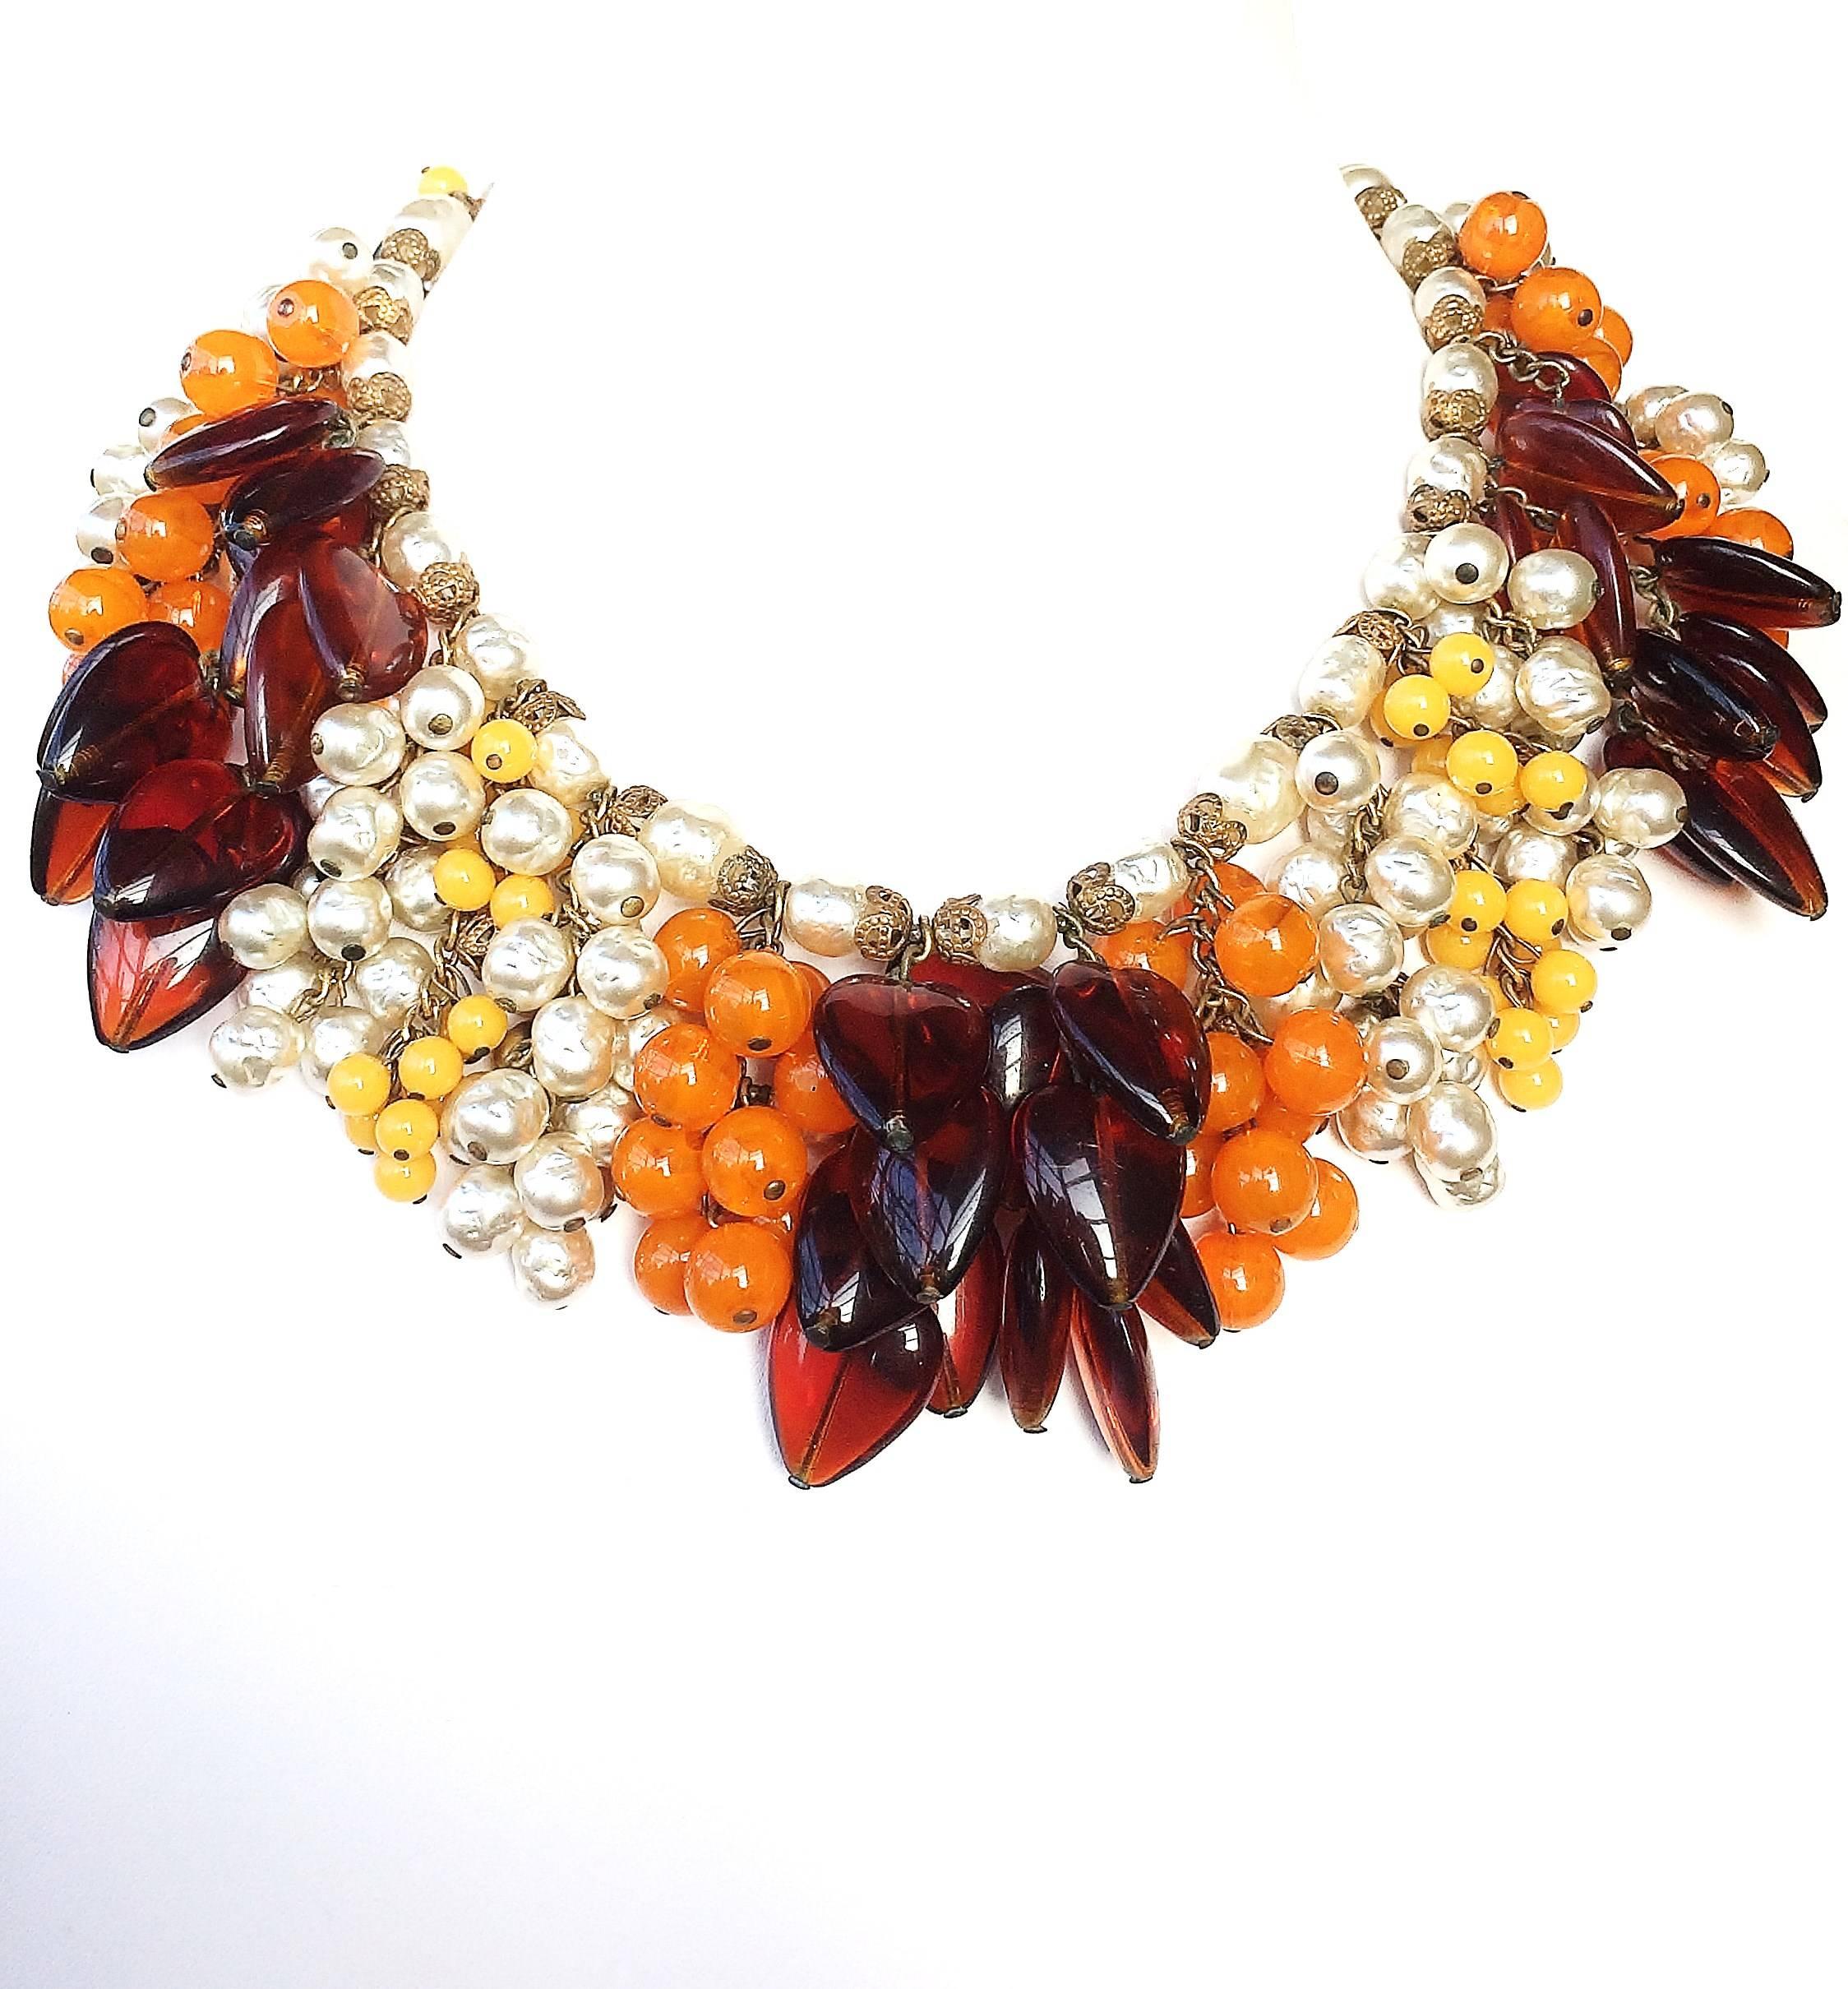 Un magnifique collier et des boucles d'oreilles, très impressionnants et somptueux, conçus par Robert Clark pour Miriam Haskell, composés de perles baroques, de gouttes de verre en forme de feuilles et de perles de verre, de couleur orange, jaune et